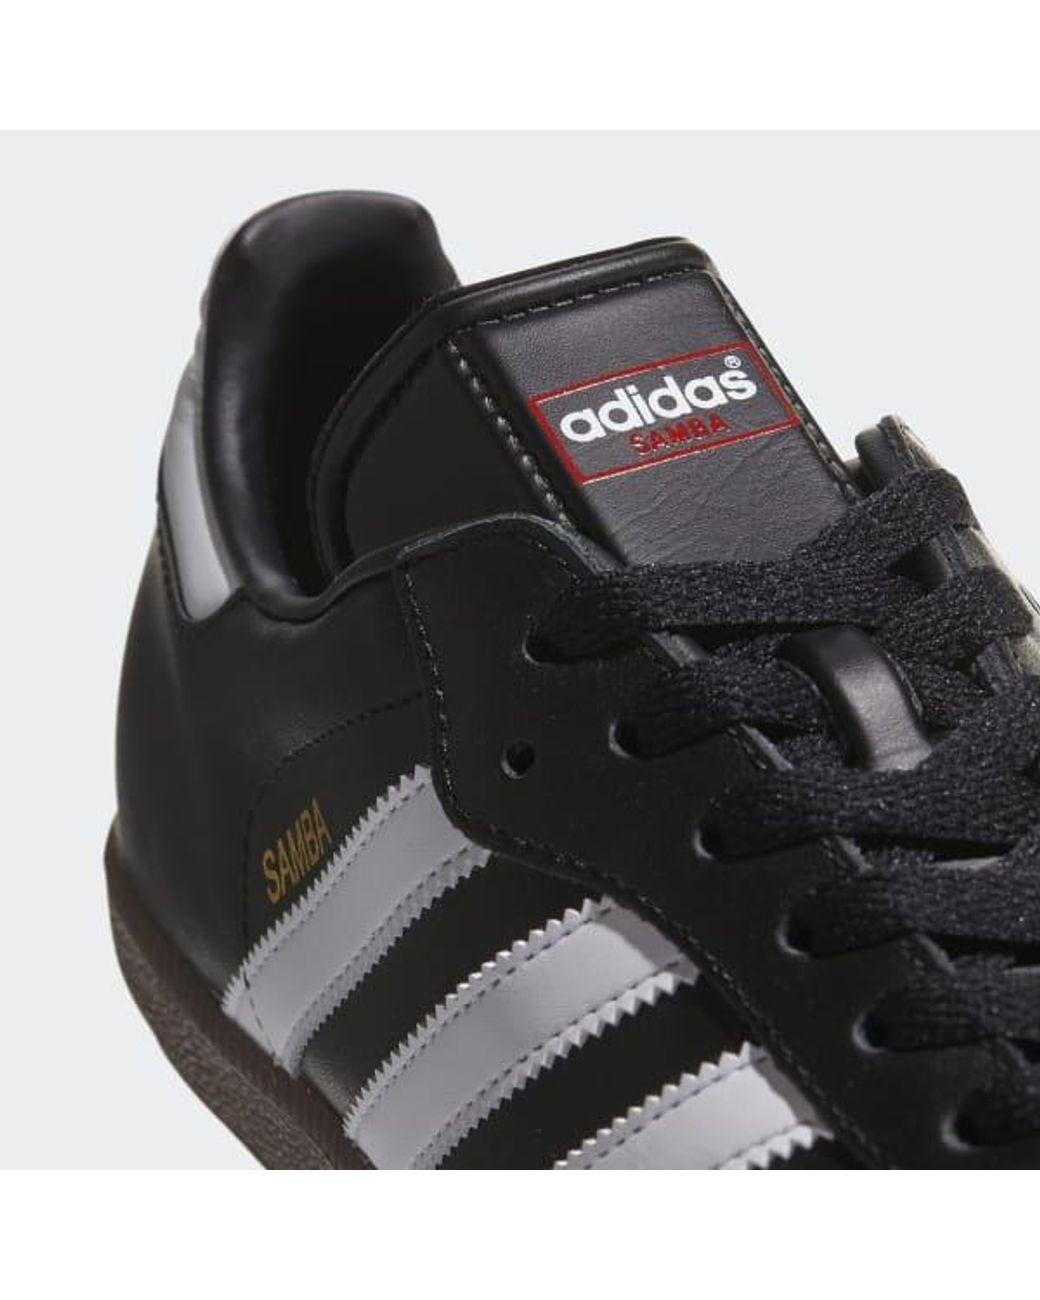 adidas samba leather shoes